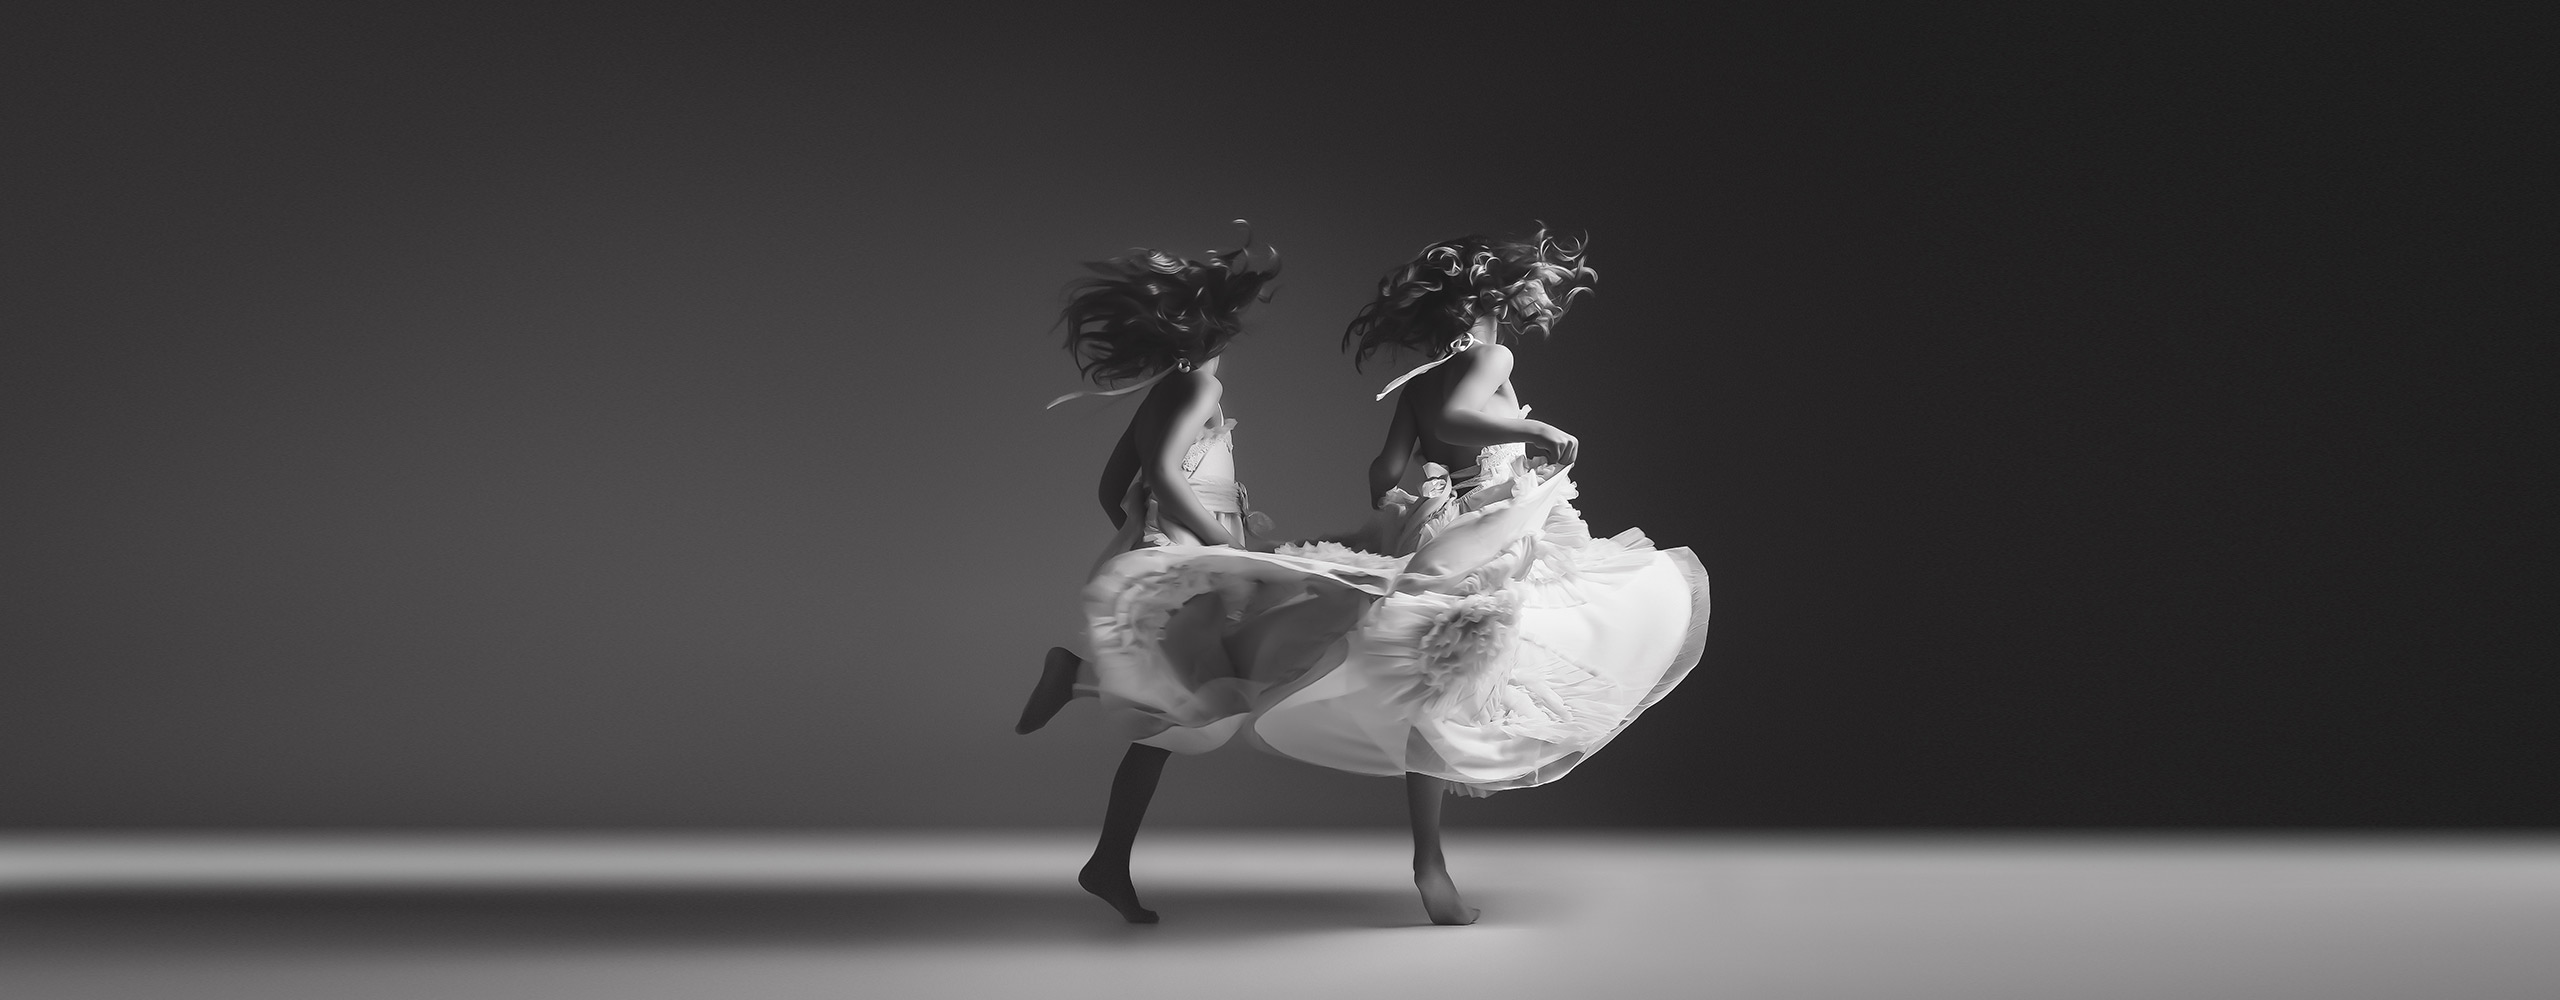 Jennifer Blakeley - Two Girls Dancing in flowing dress